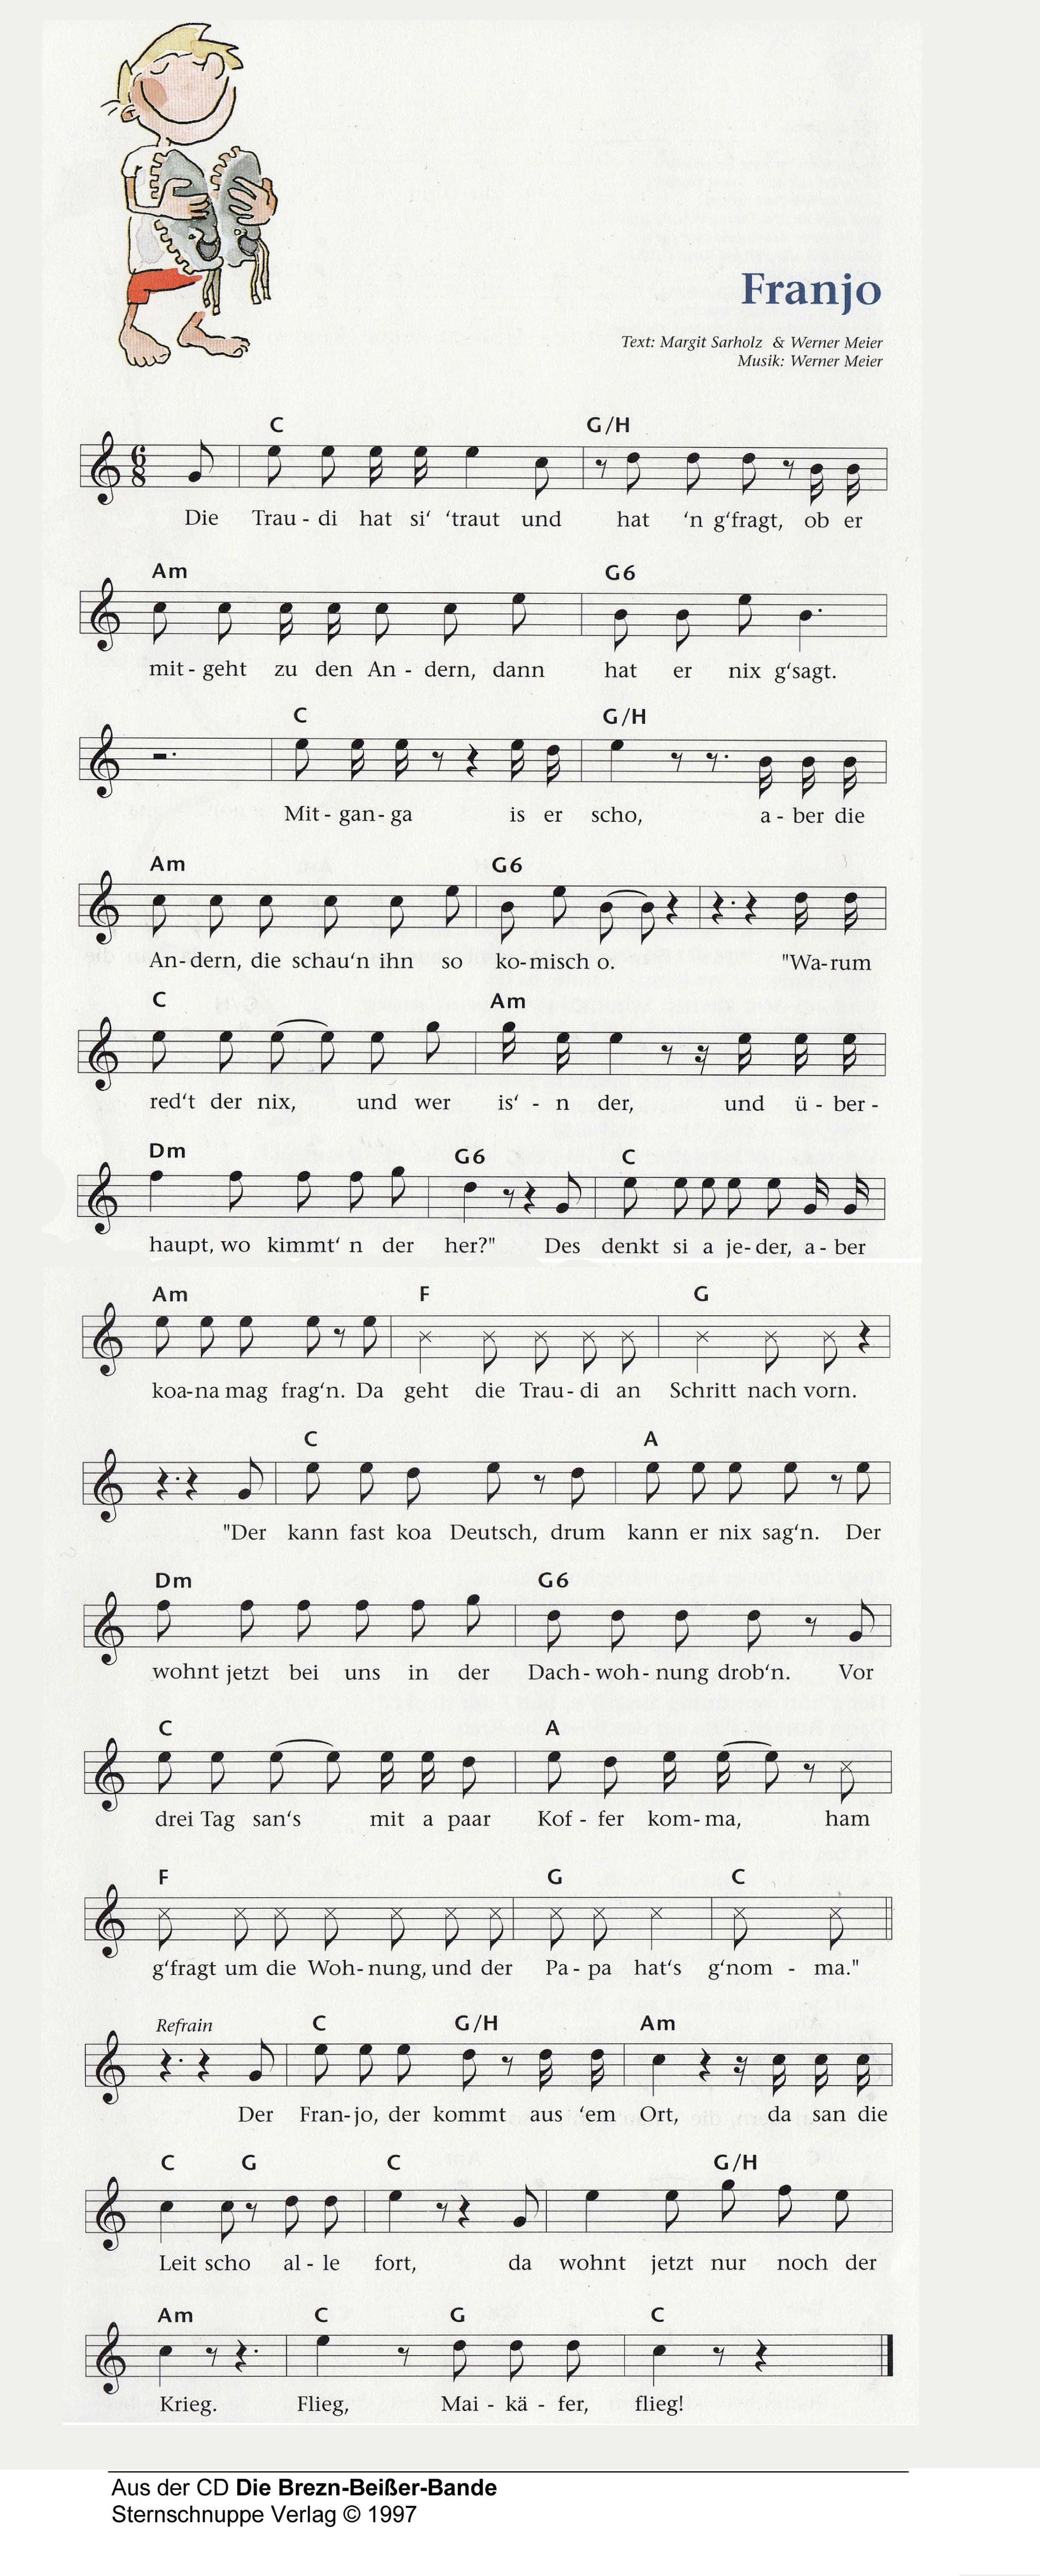 Liedtext, Akkorde und Noten vom Kinderlied Franjo